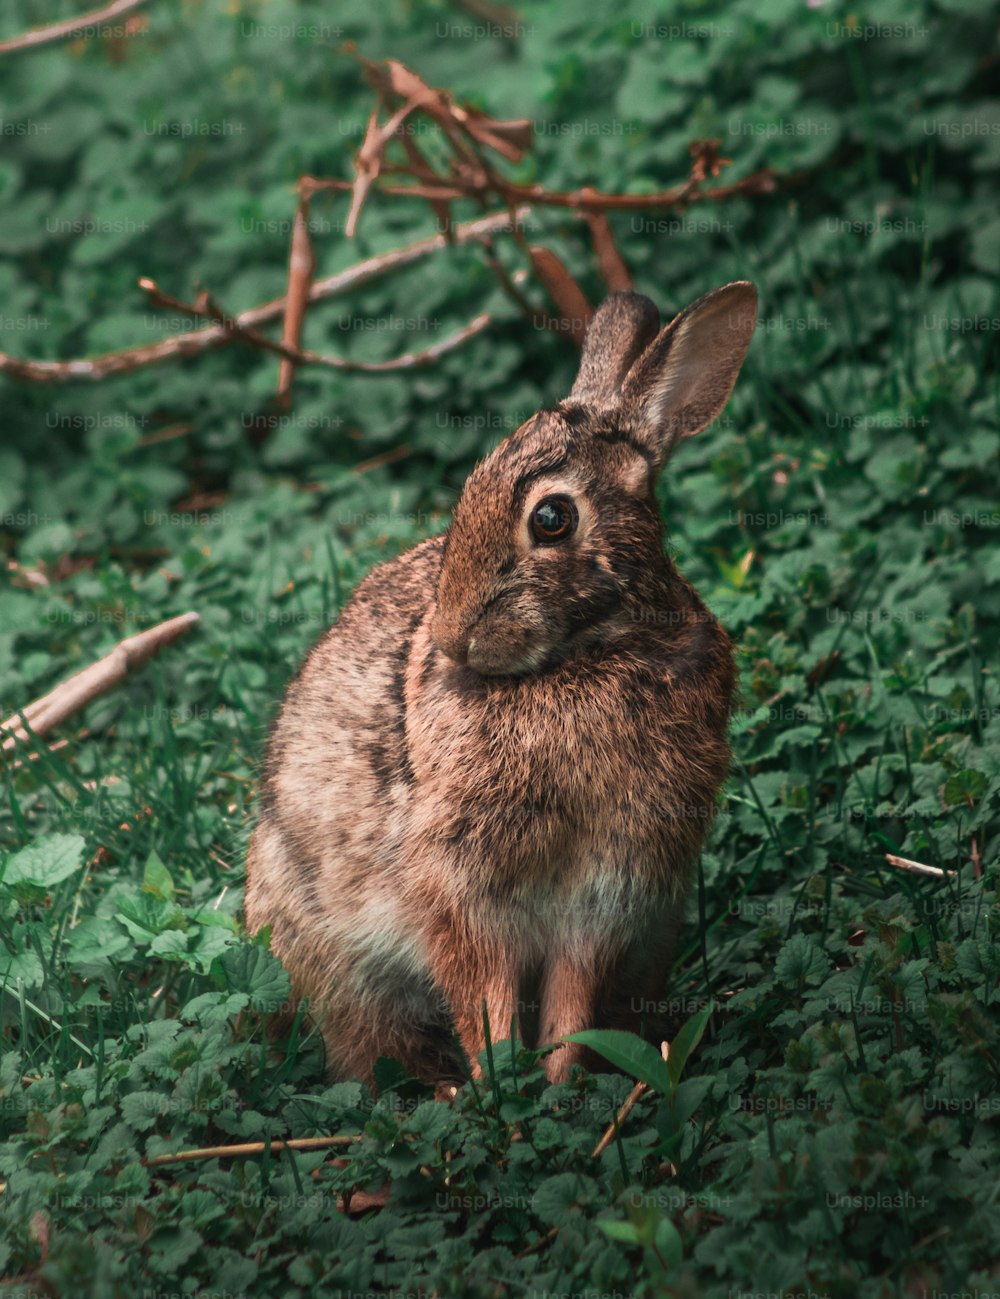 Un conejo está sentado en la hierba mirando a la cámara